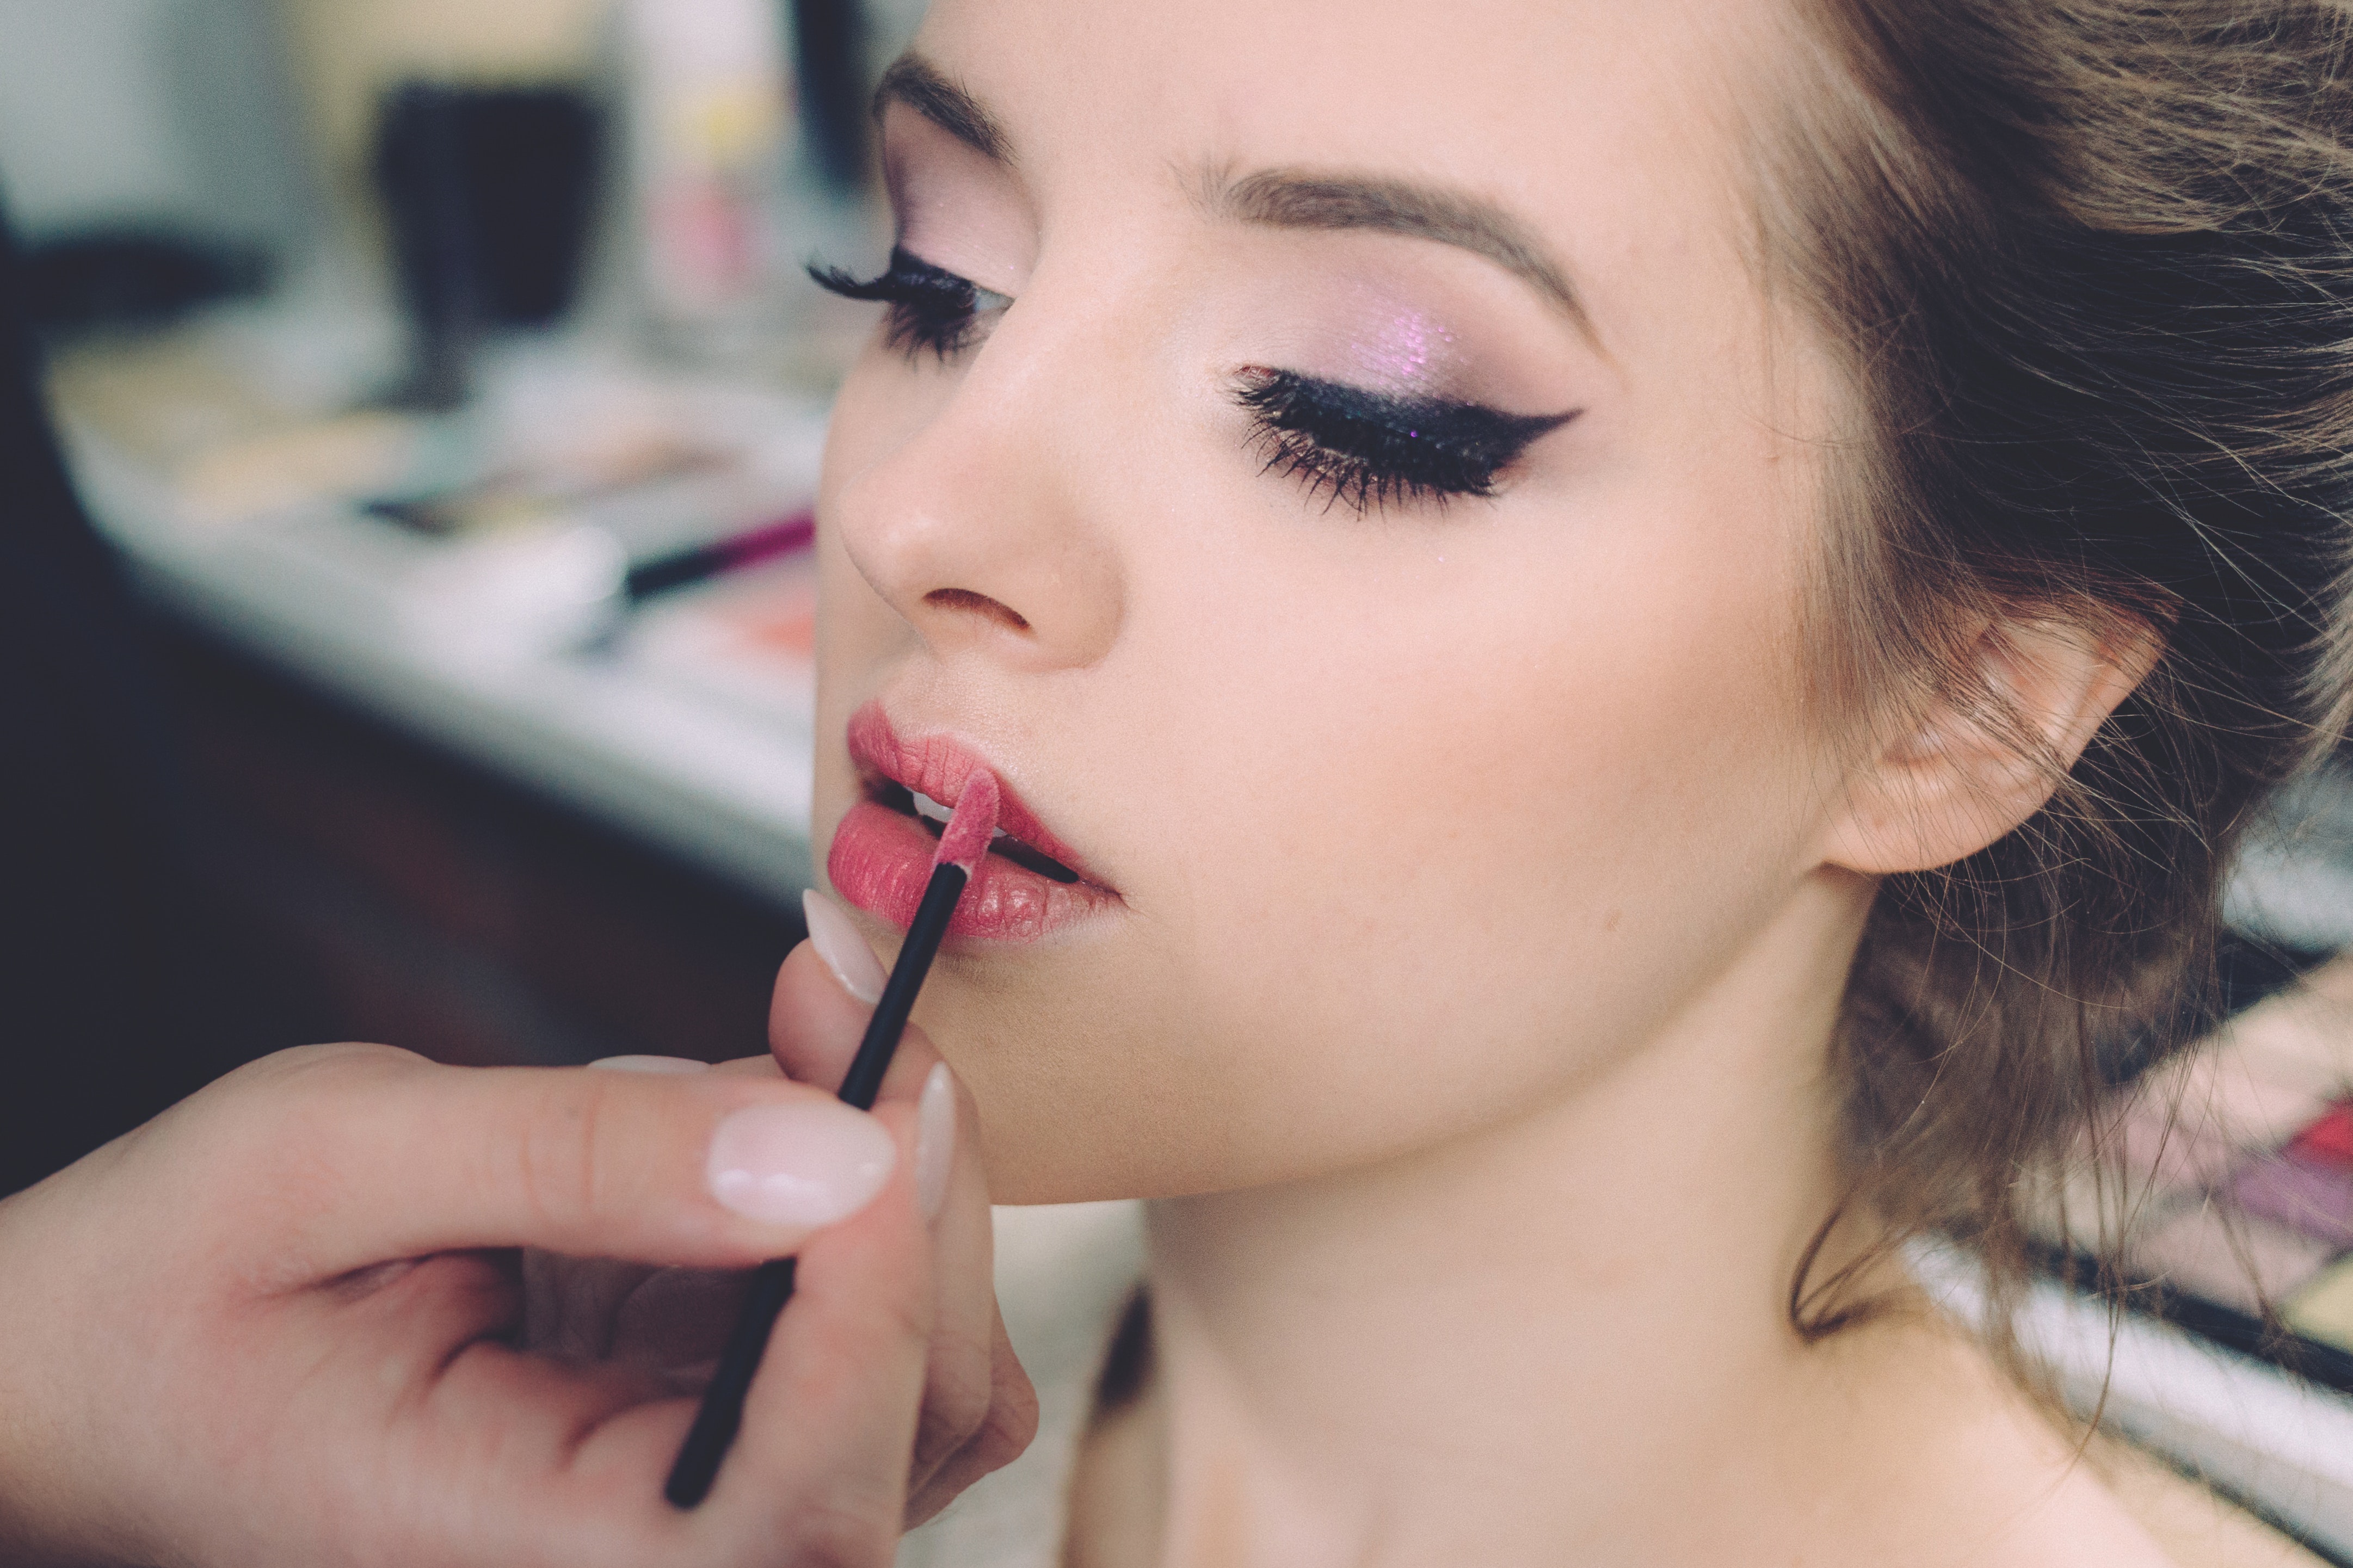 woman makeup lipstick free stock photo - negativespace